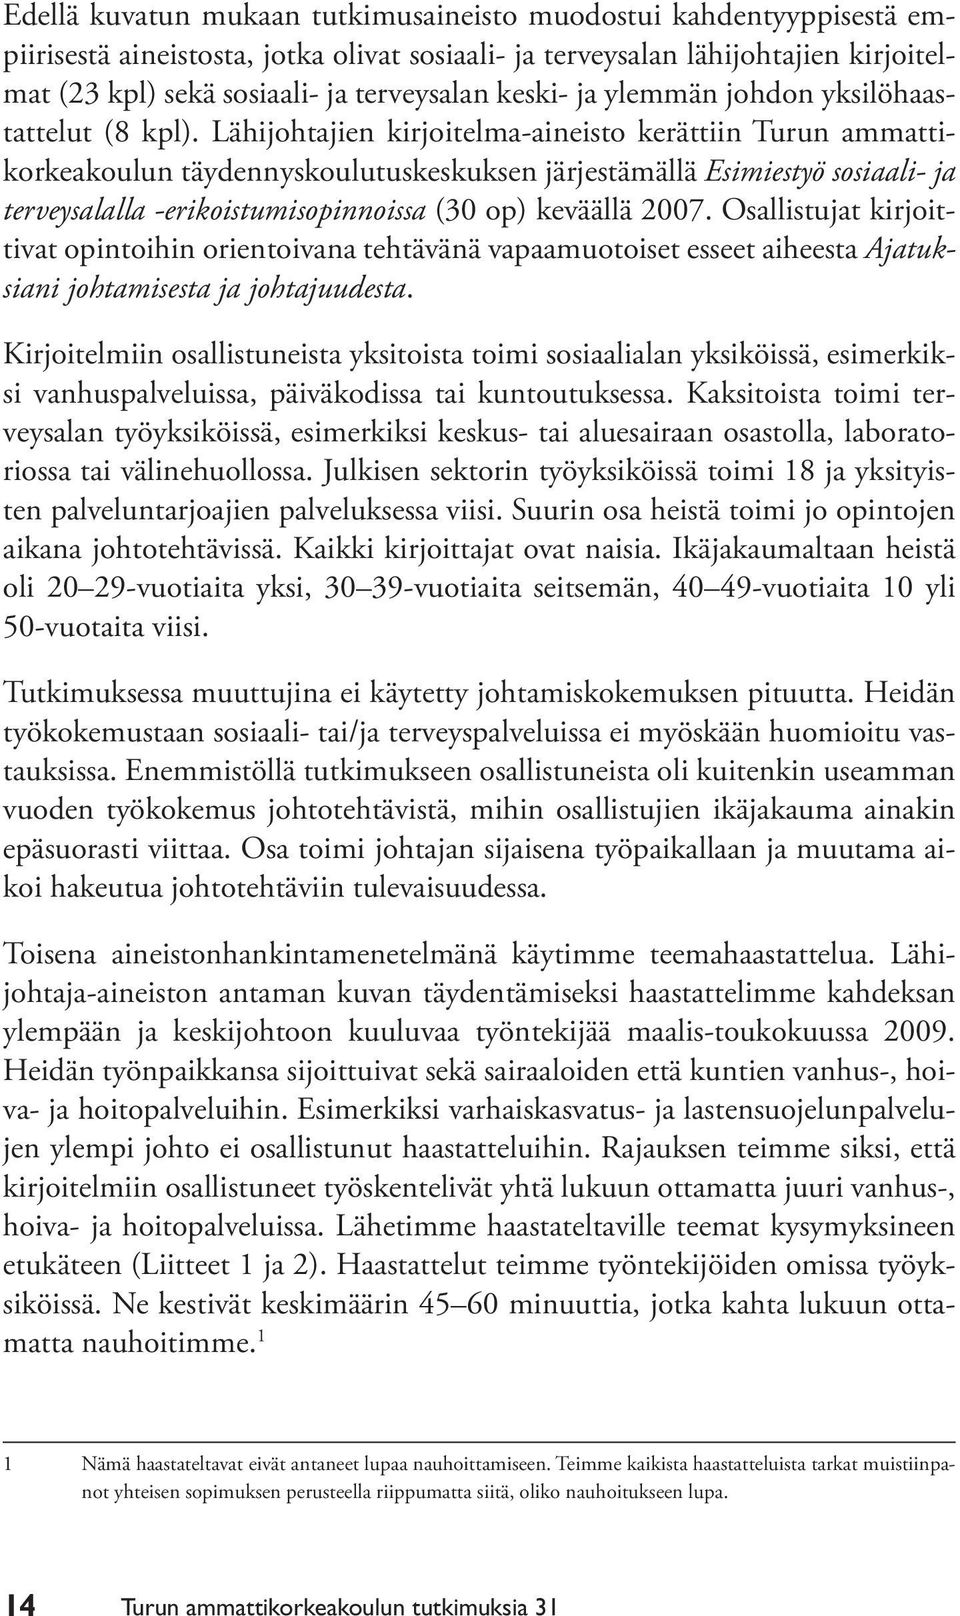 Lähijohtajien kirjoitelma-aineisto kerättiin Turun ammattikorkeakoulun täydennyskoulutuskeskuksen järjestämällä Esimiestyö sosiaali- ja terveysalalla -erikoistumisopinnoissa (30 op) keväällä 2007.